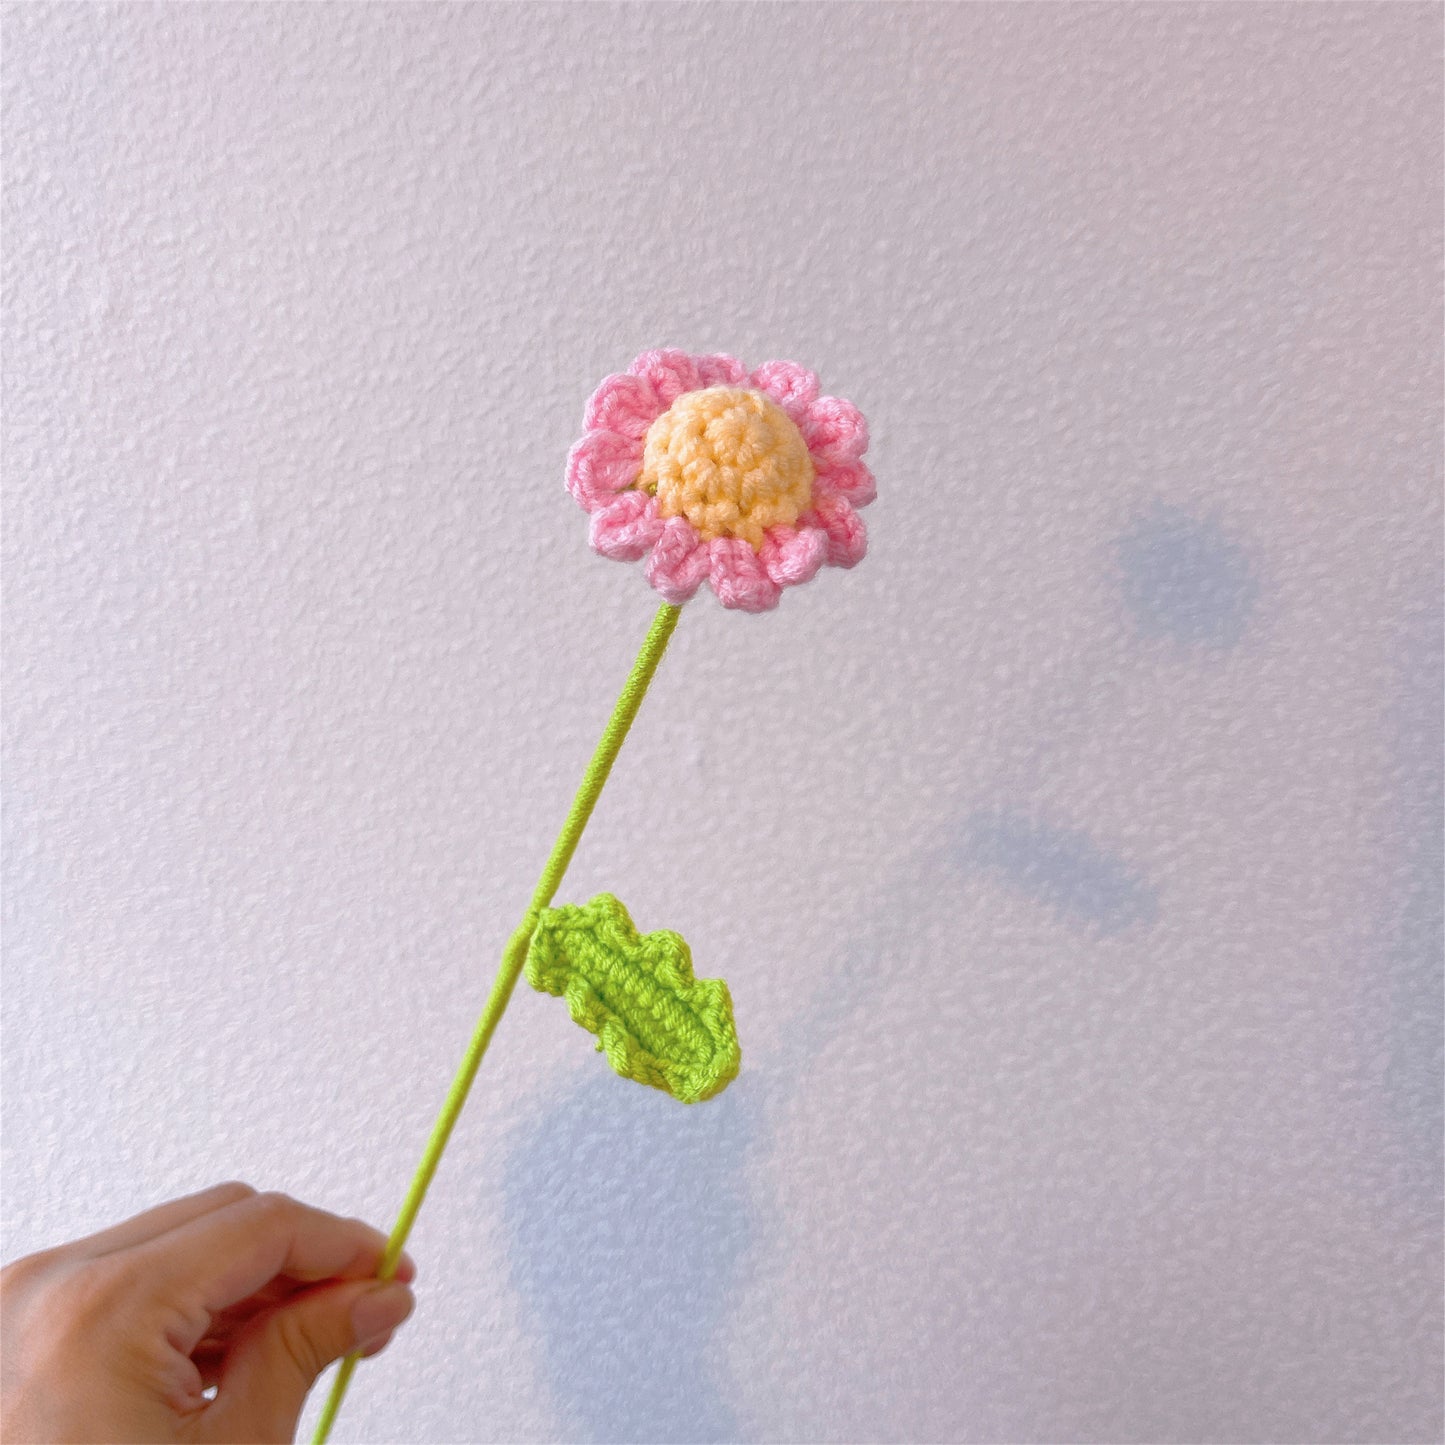 Sunny Meadow: Handgefertigter gehäkelter kleiner Gänseblümchenpfahl für eine fröhliche Gartendekoration